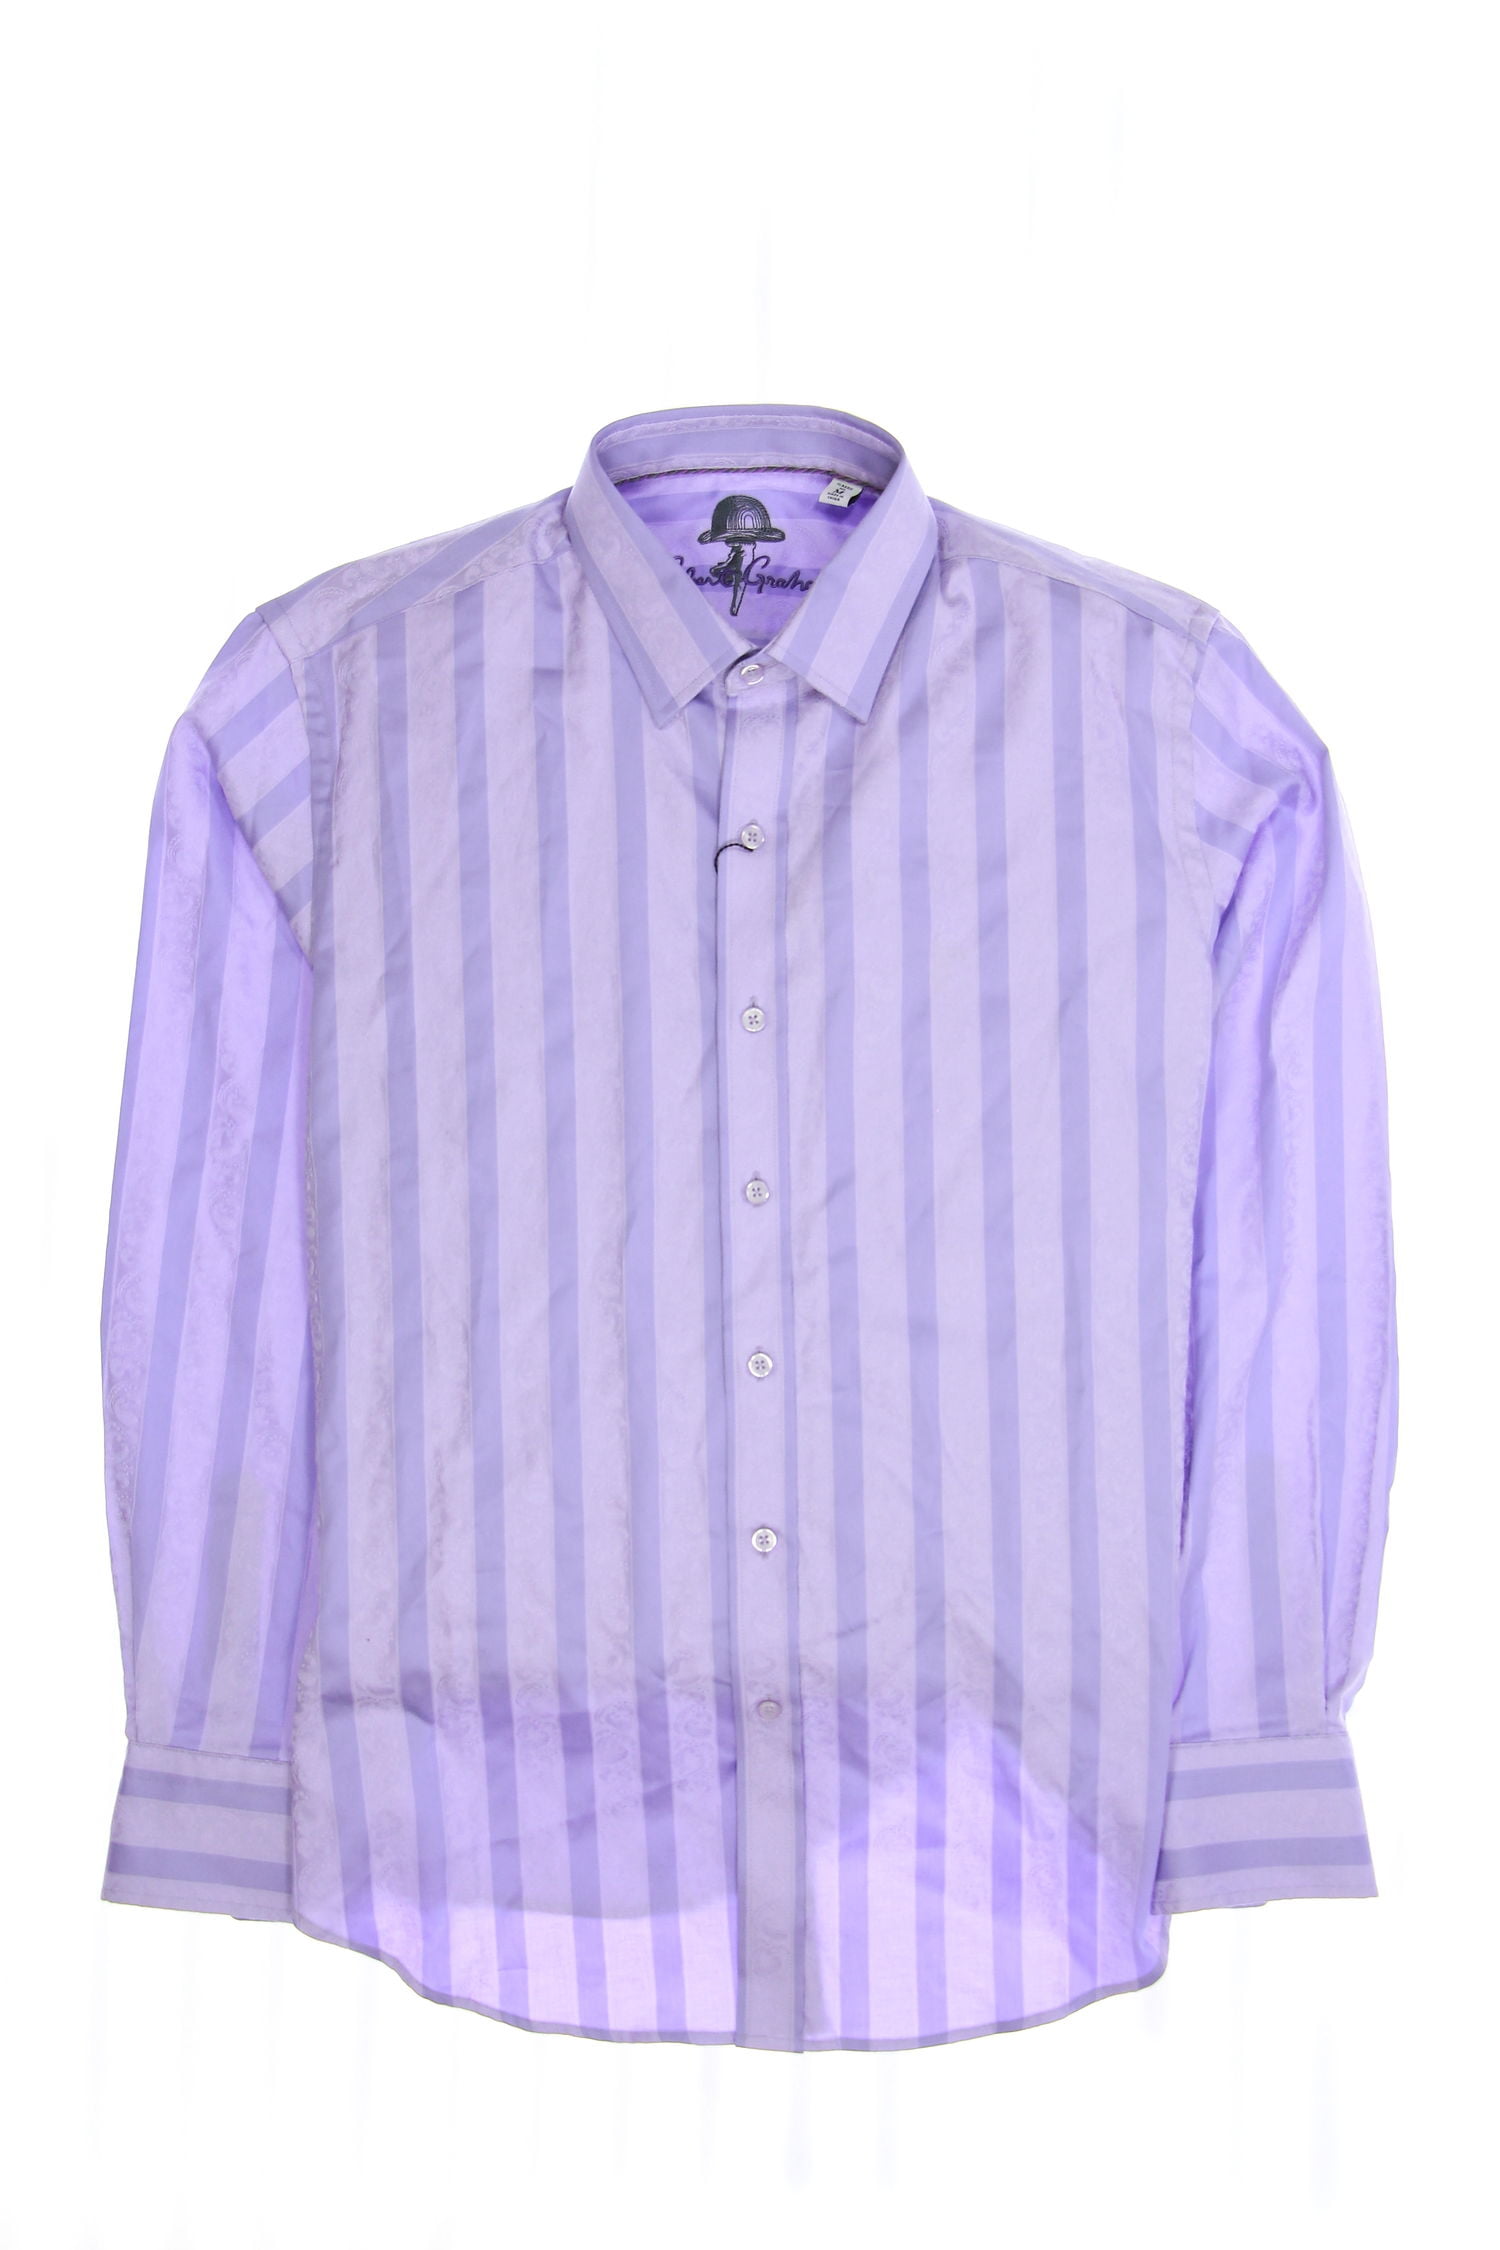 198 NWT Robert Graham Backstreet LS Woven Shirt Purple Size-Medium 